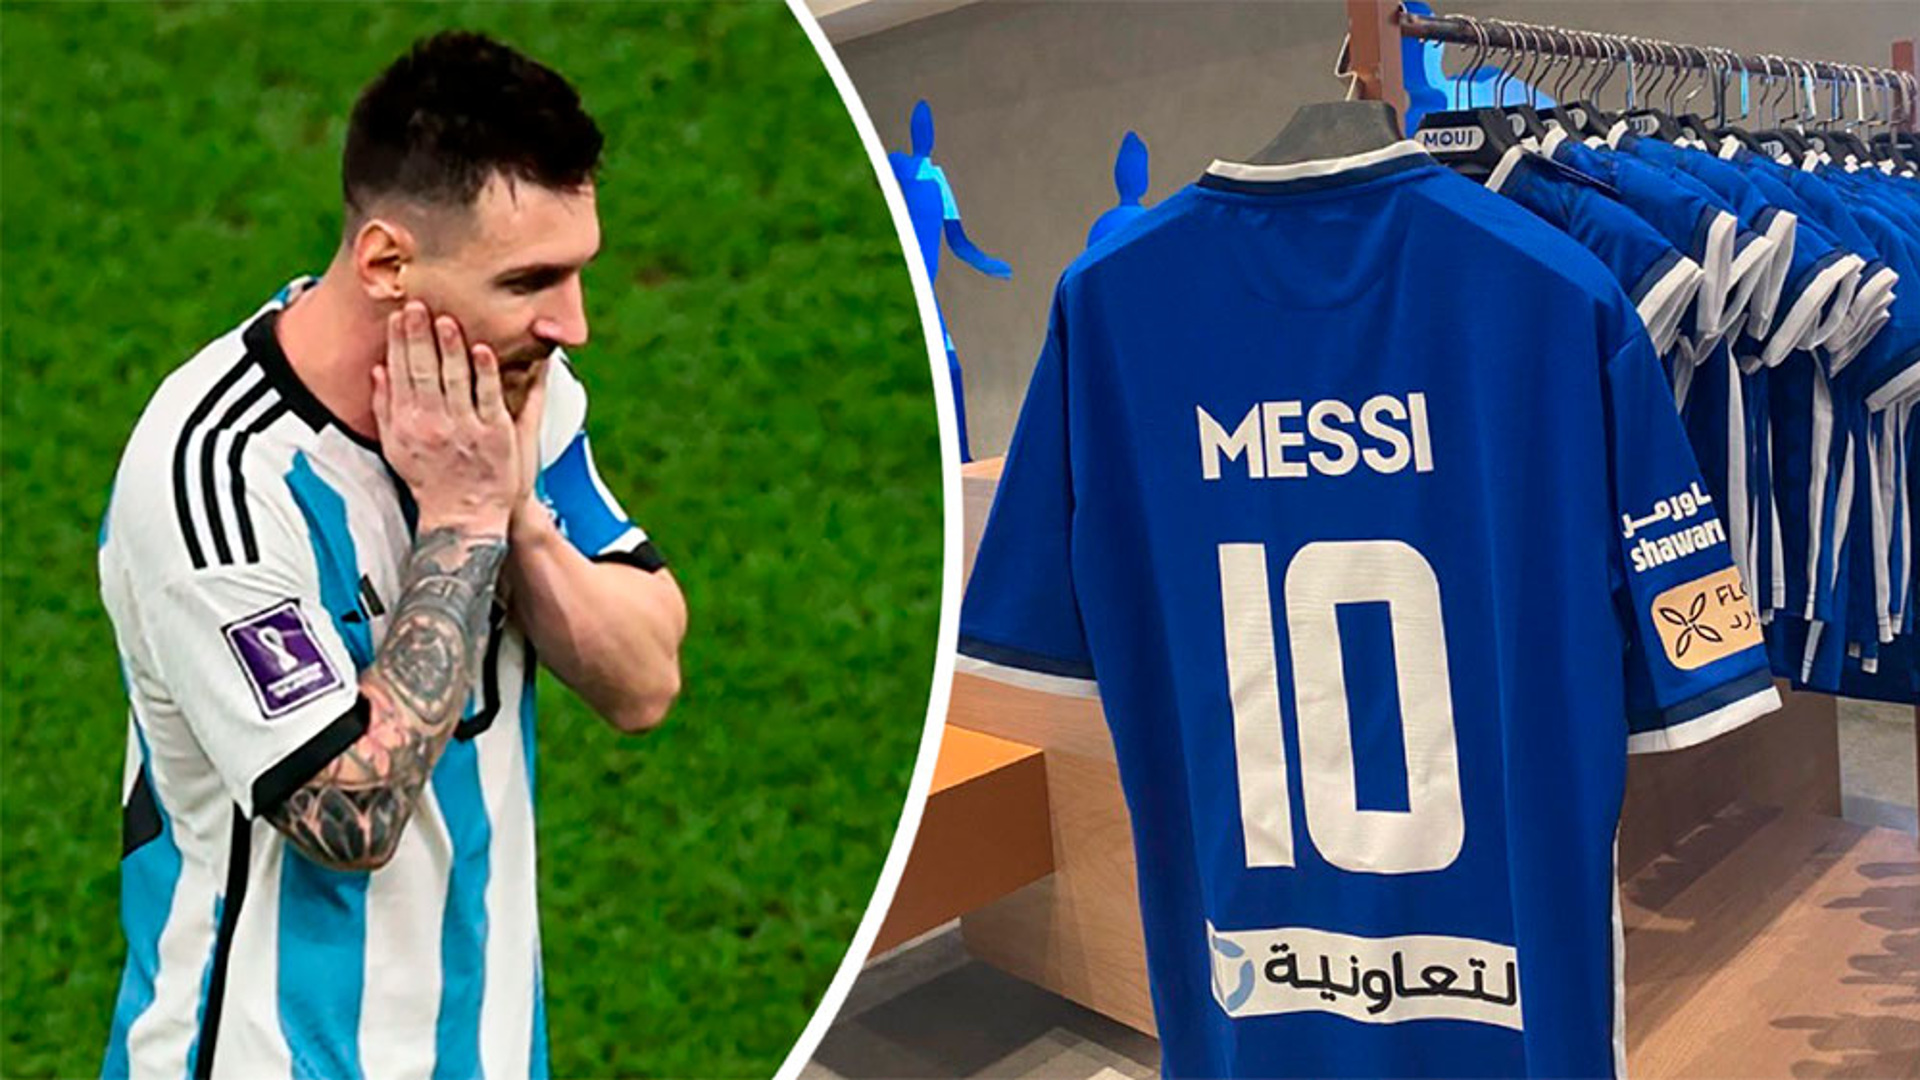 Saudovskiy klub torguyet futbolkami s imenem Messi